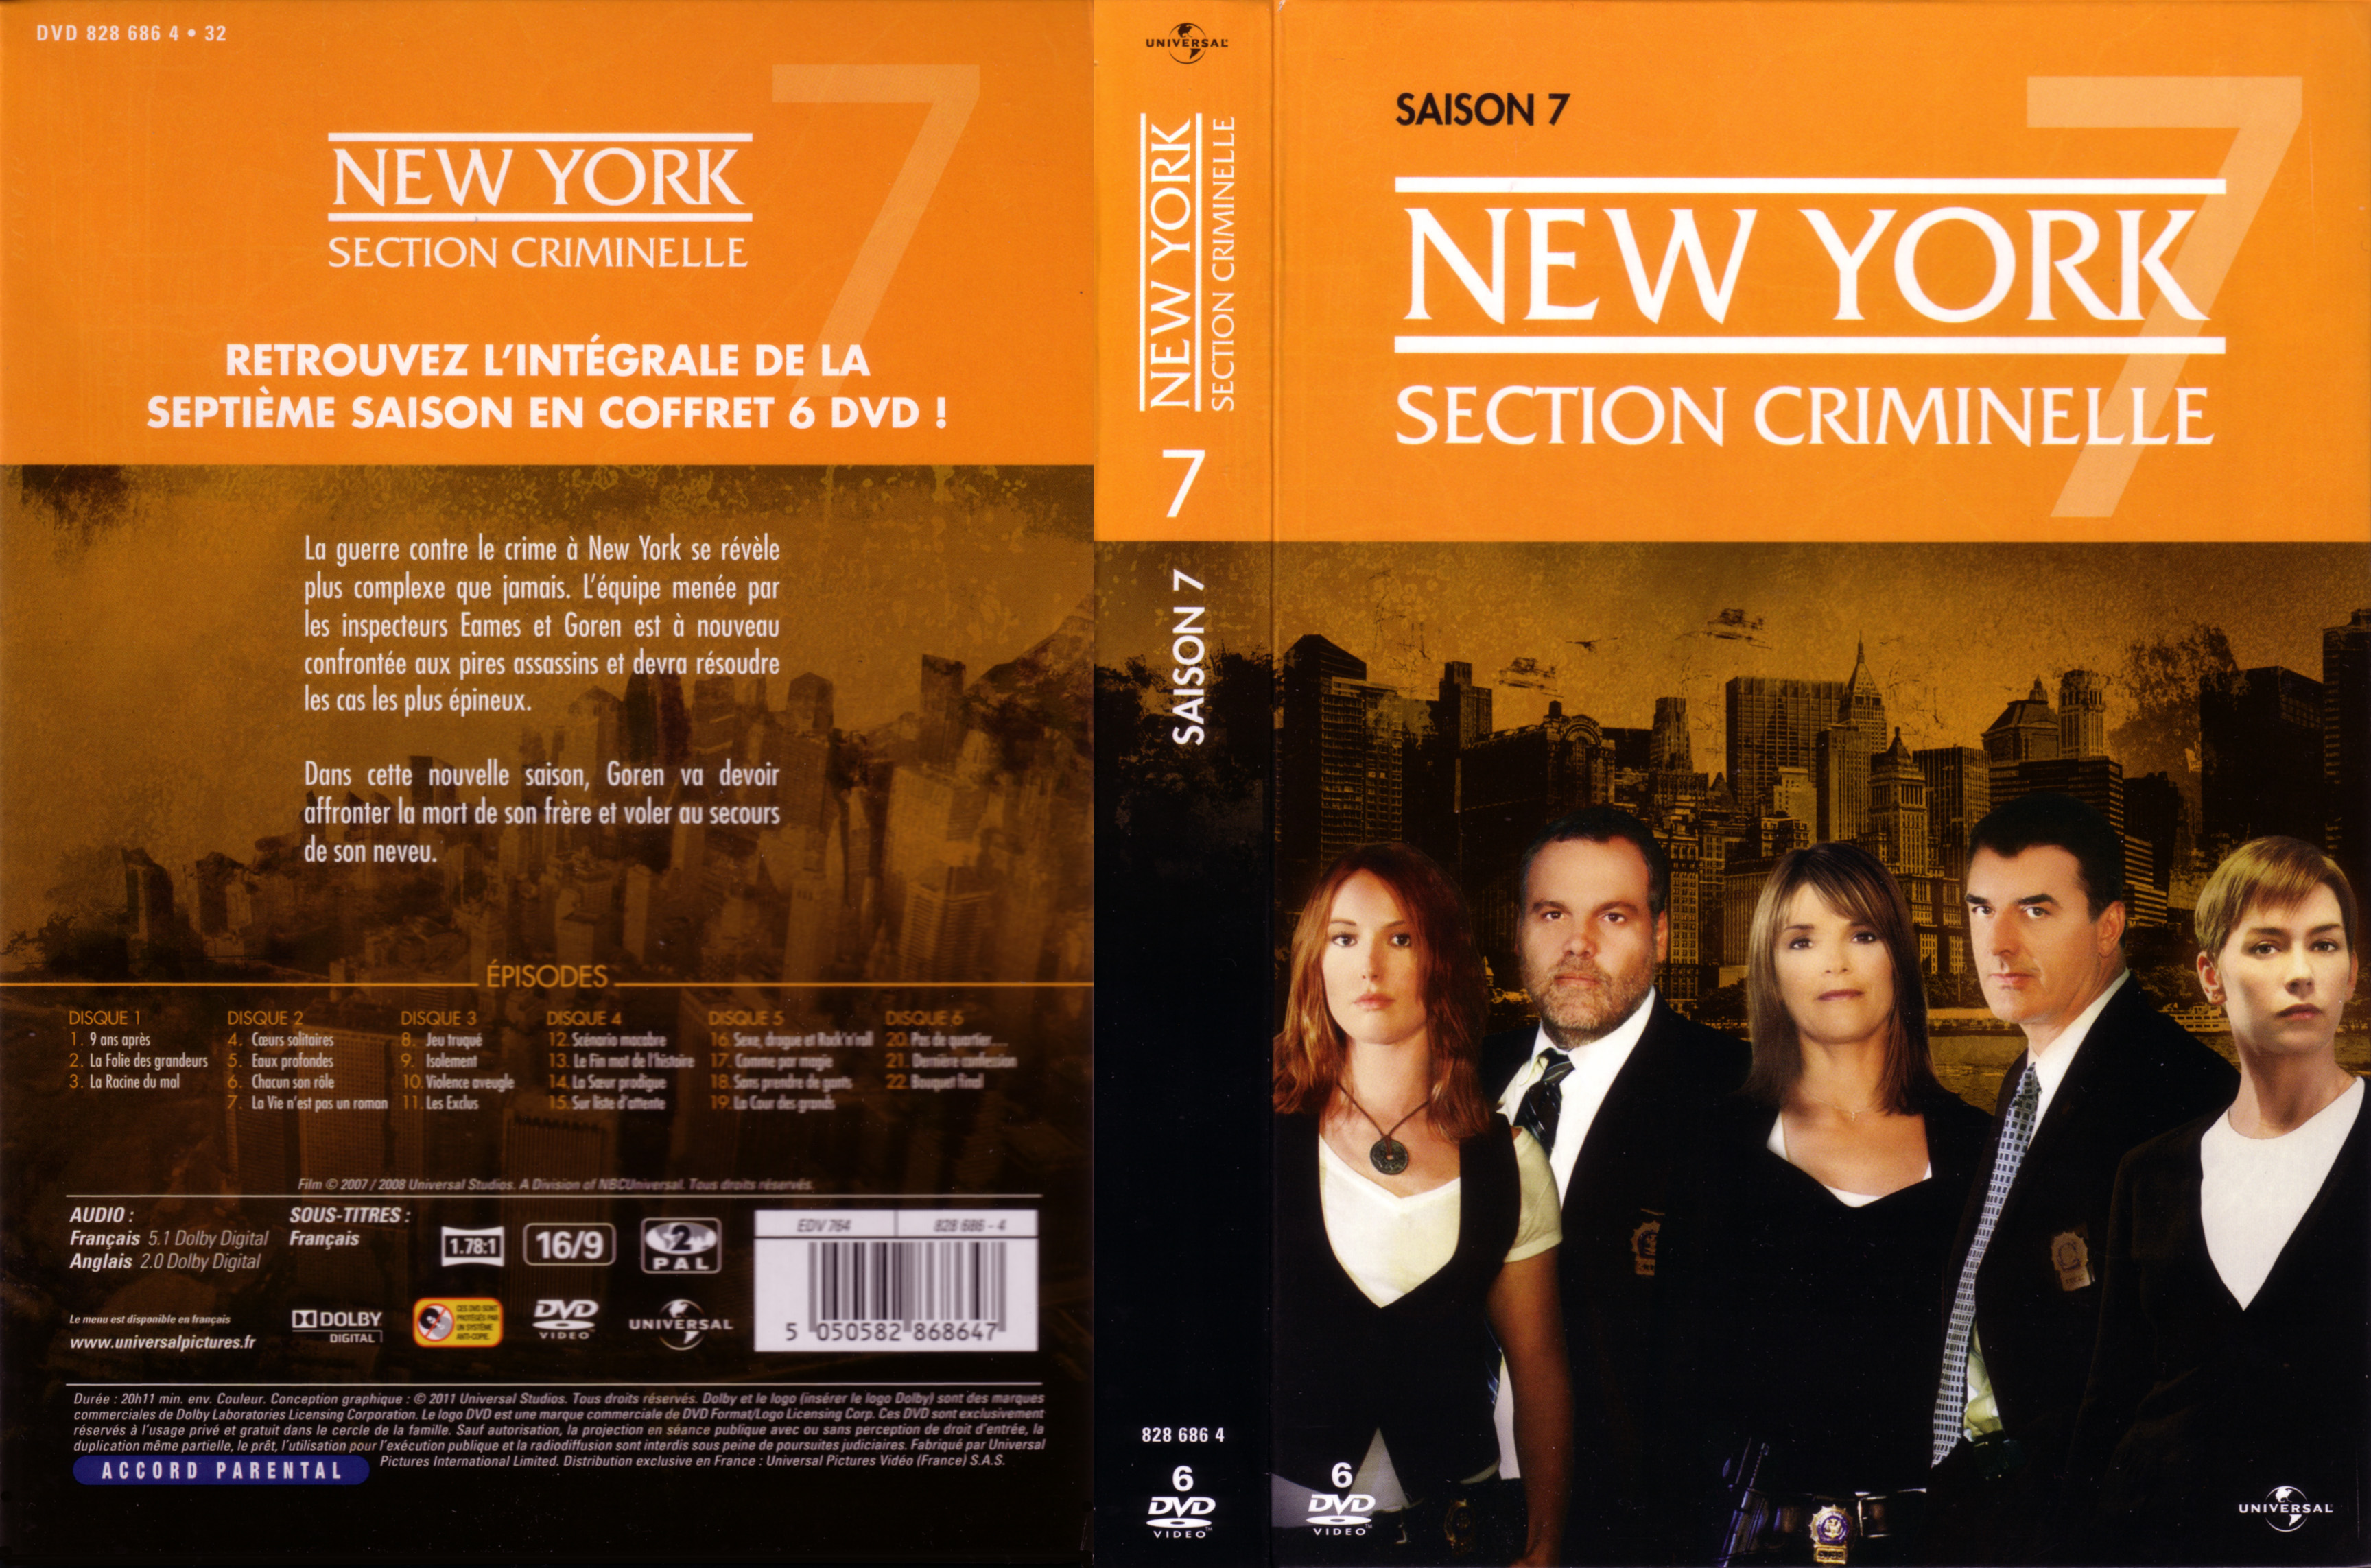 Jaquette DVD New york section criminelle saison 7